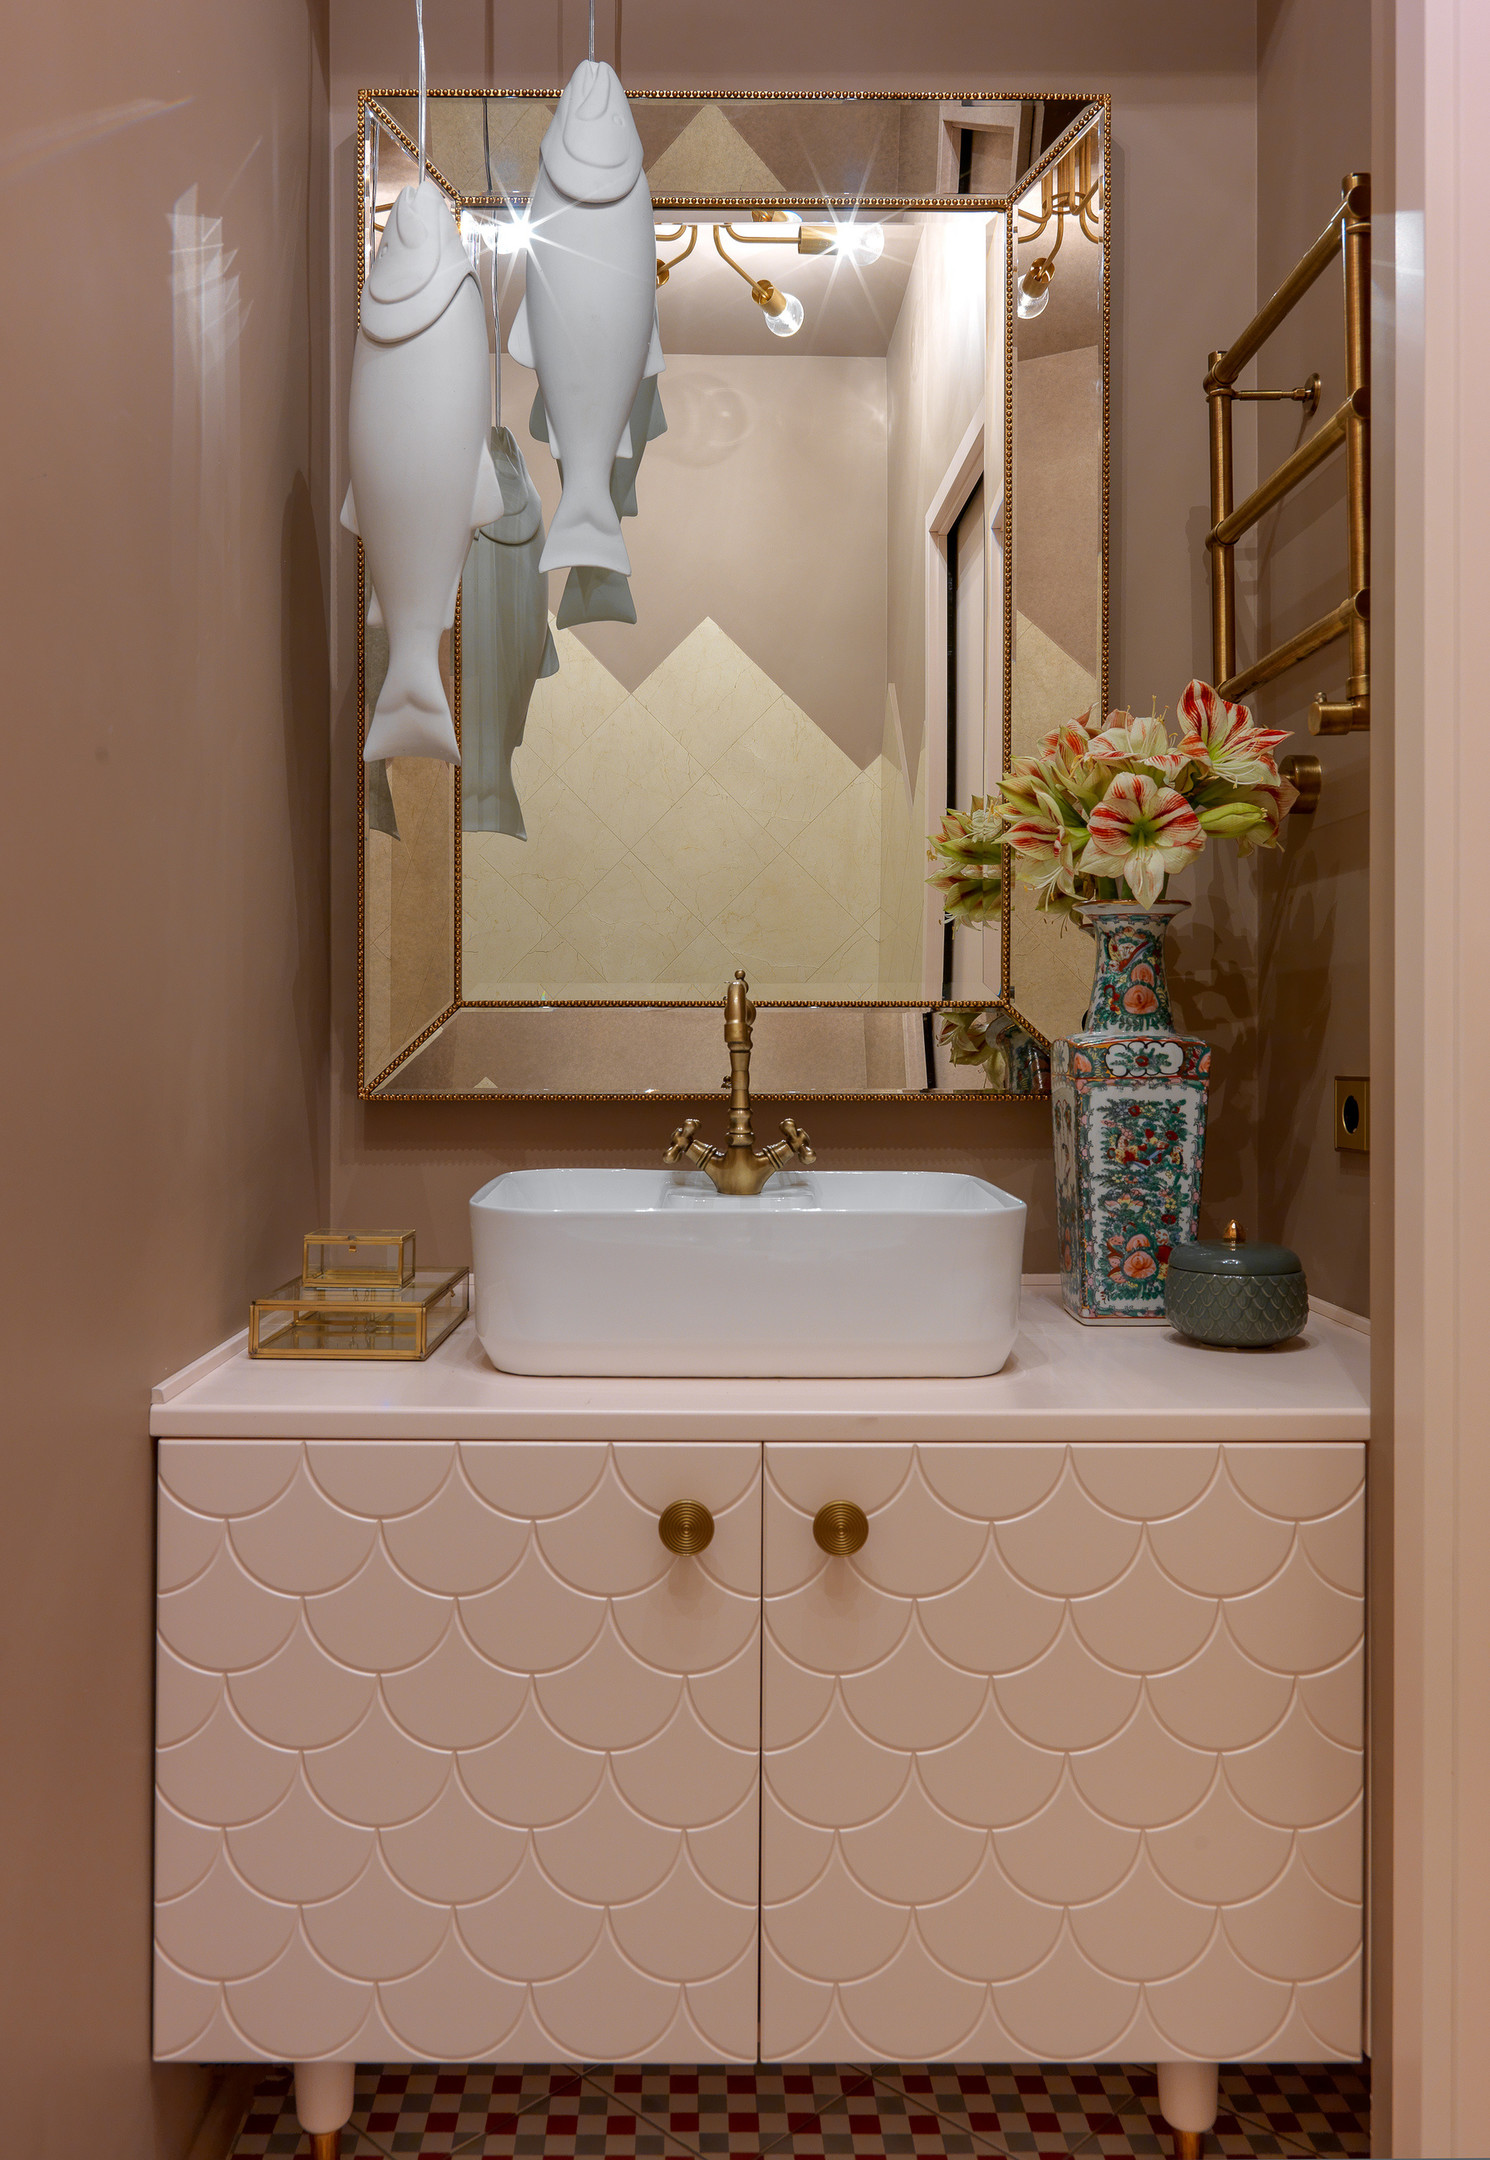 Hình ảnh bắt mắt tại khu vực bồn rửa phòng tắm với chiếc tủ vanity màu hồng phấn họa tiết vảy cá ấn tượng, tone màu hồng đậm hơn ở bức tường để tạo sự nổi bật.